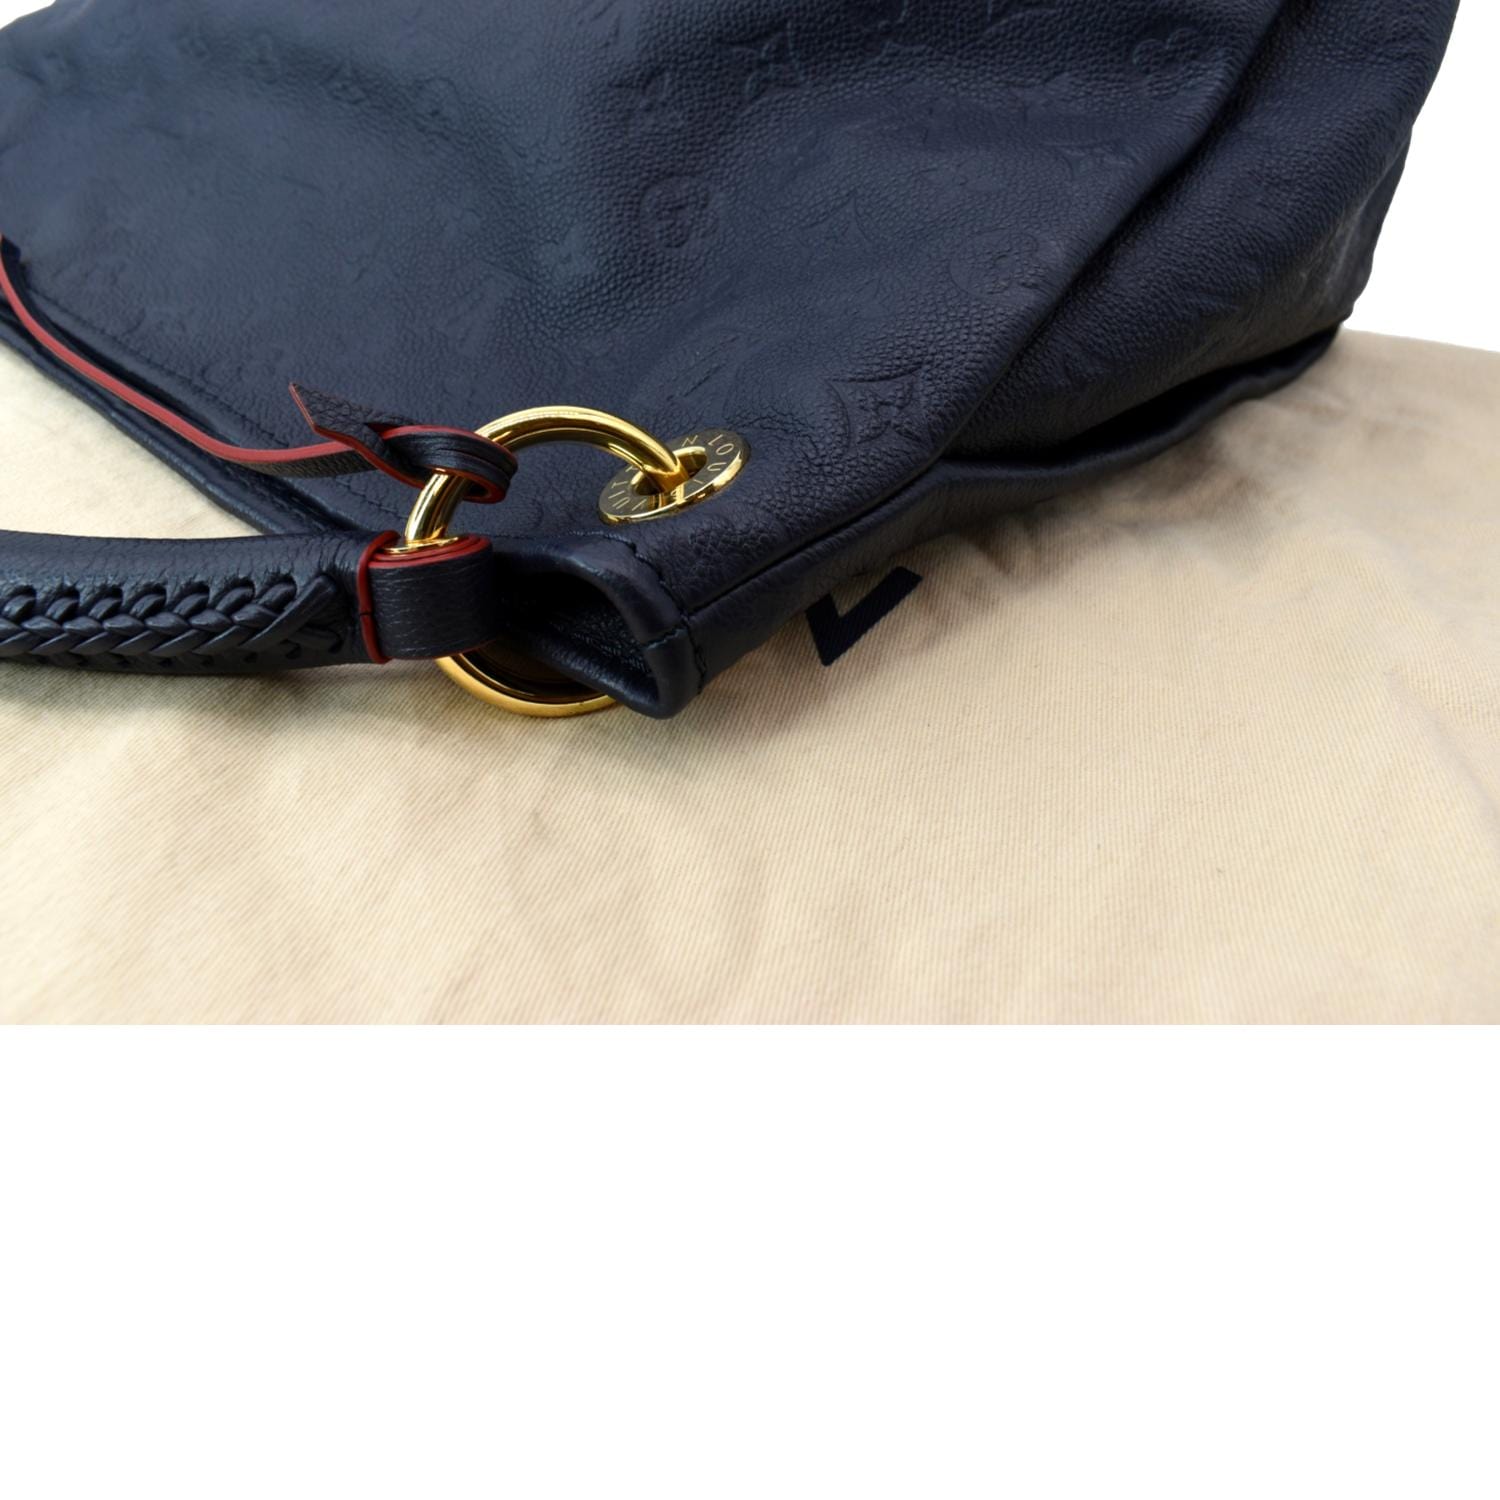 LOUIS VUITTON Artsy MM Empreinte Leather Shoulder Bag Blue